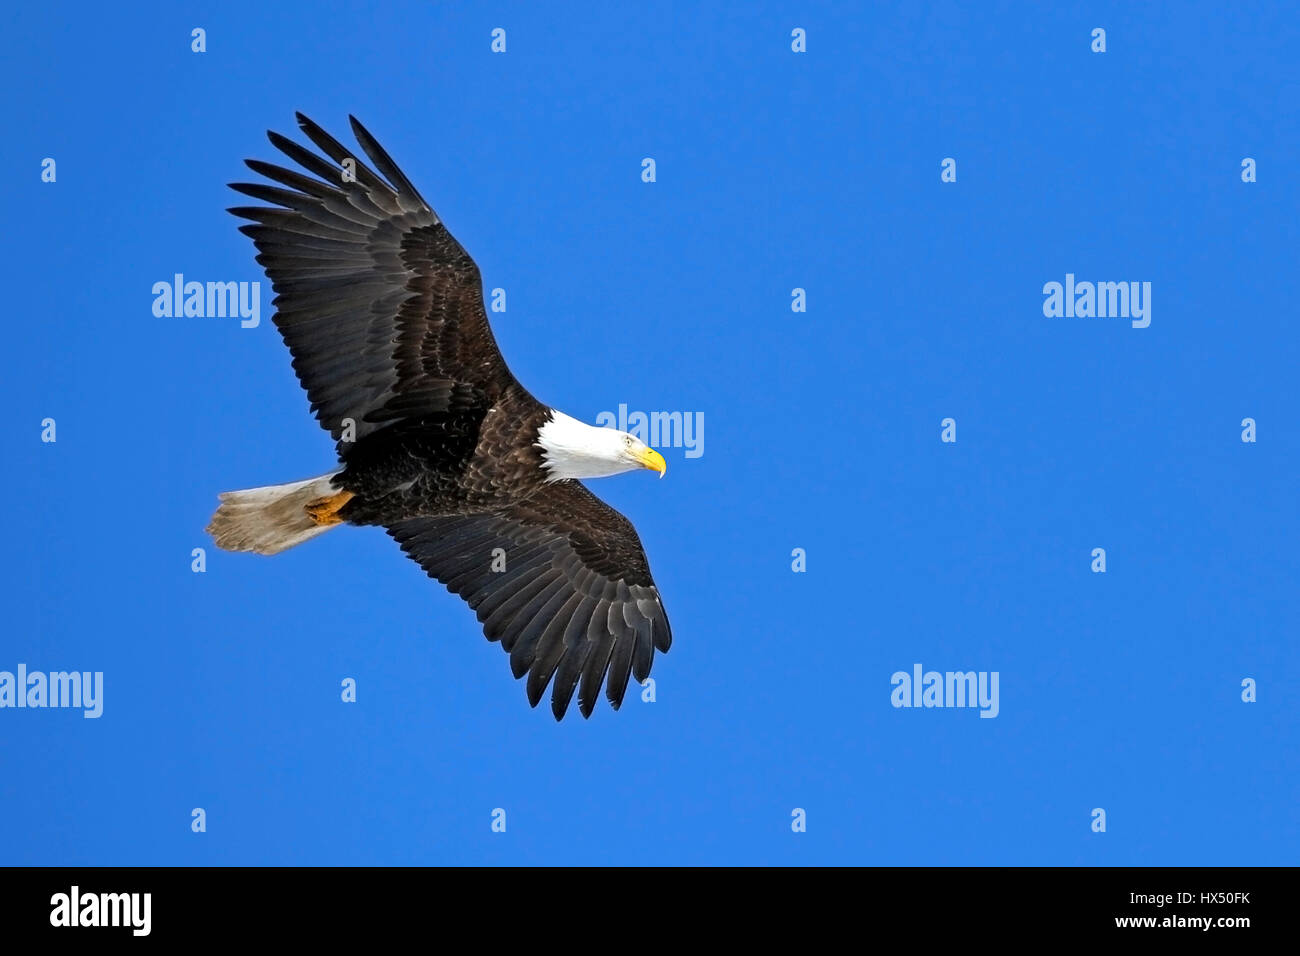 Weißkopf Adler im Flug, im blauen Himmel Stockfoto